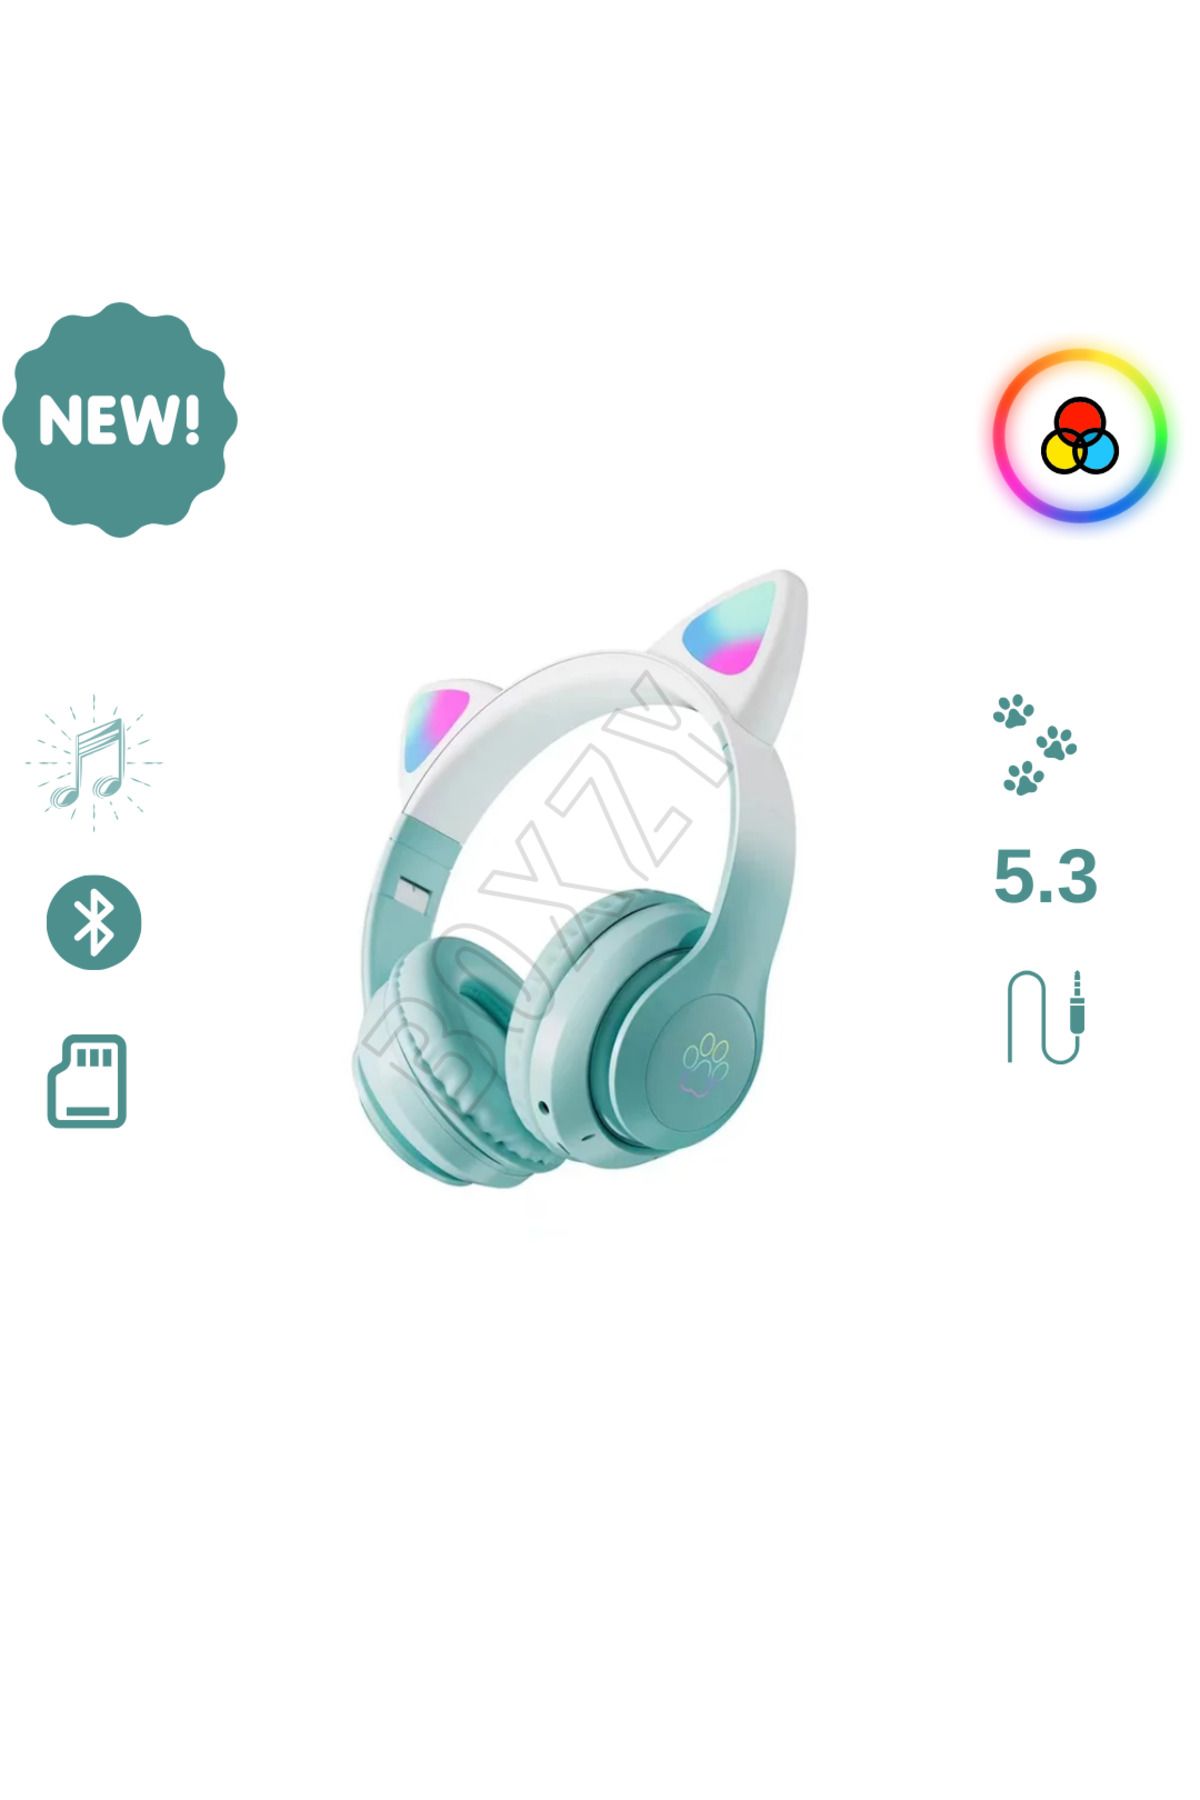 HEJARON Toygo Kedi Kulaklık Pro 5.3 Akıllı Rgb Led Detaylı Bluetooth Kablosuz Kulaklık Çocuk Oyuncu Yenİ